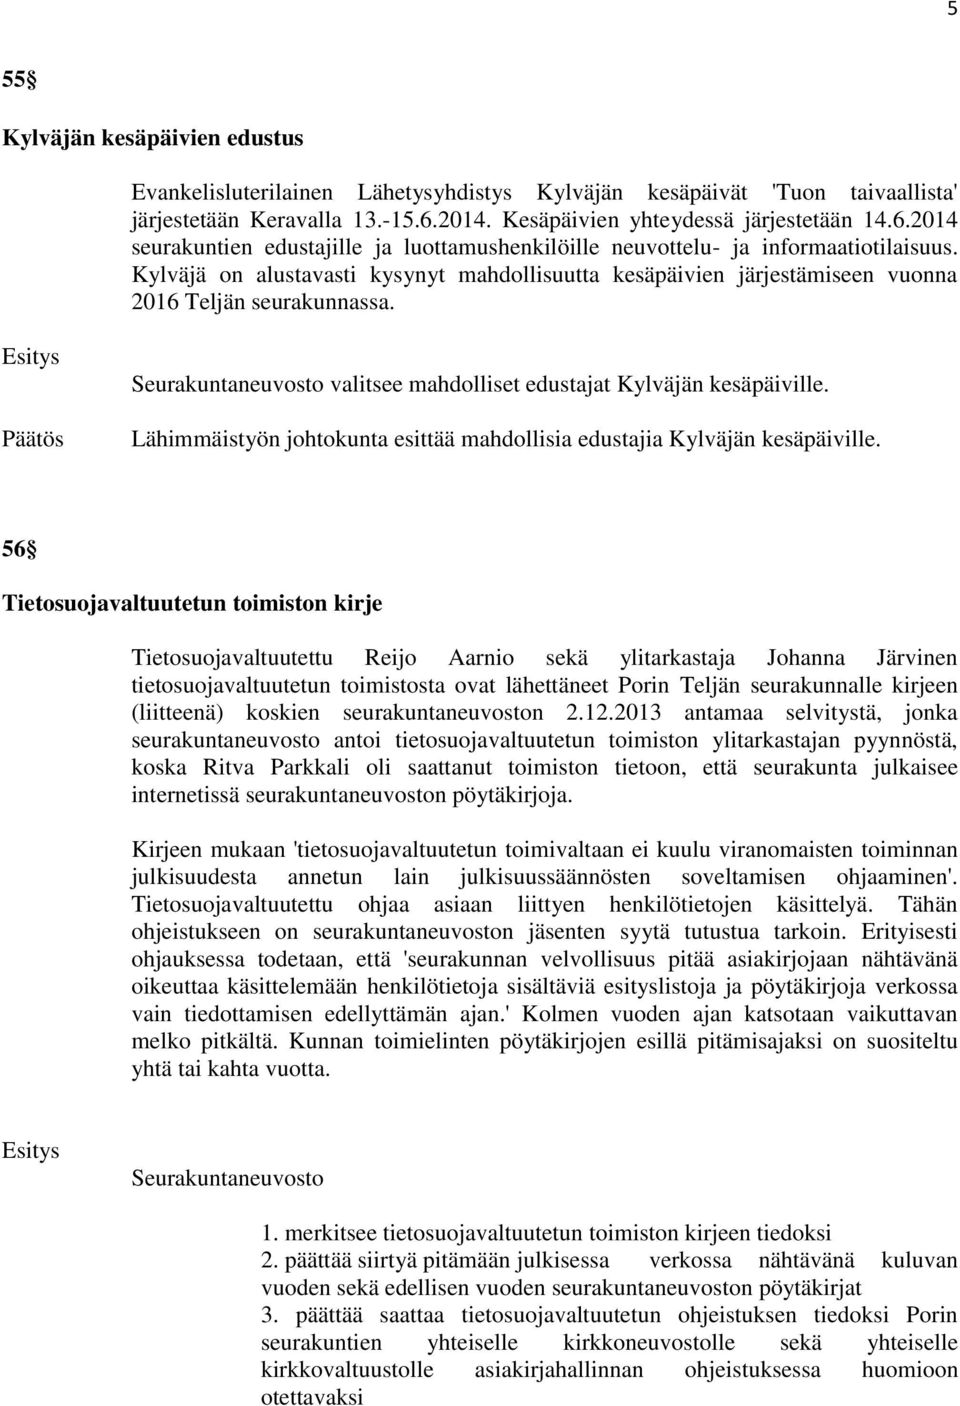 Kylväjä on alustavasti kysynyt mahdollisuutta kesäpäivien järjestämiseen vuonna 2016 Teljän seurakunnassa. Seurakuntaneuvosto valitsee mahdolliset edustajat Kylväjän kesäpäiville.